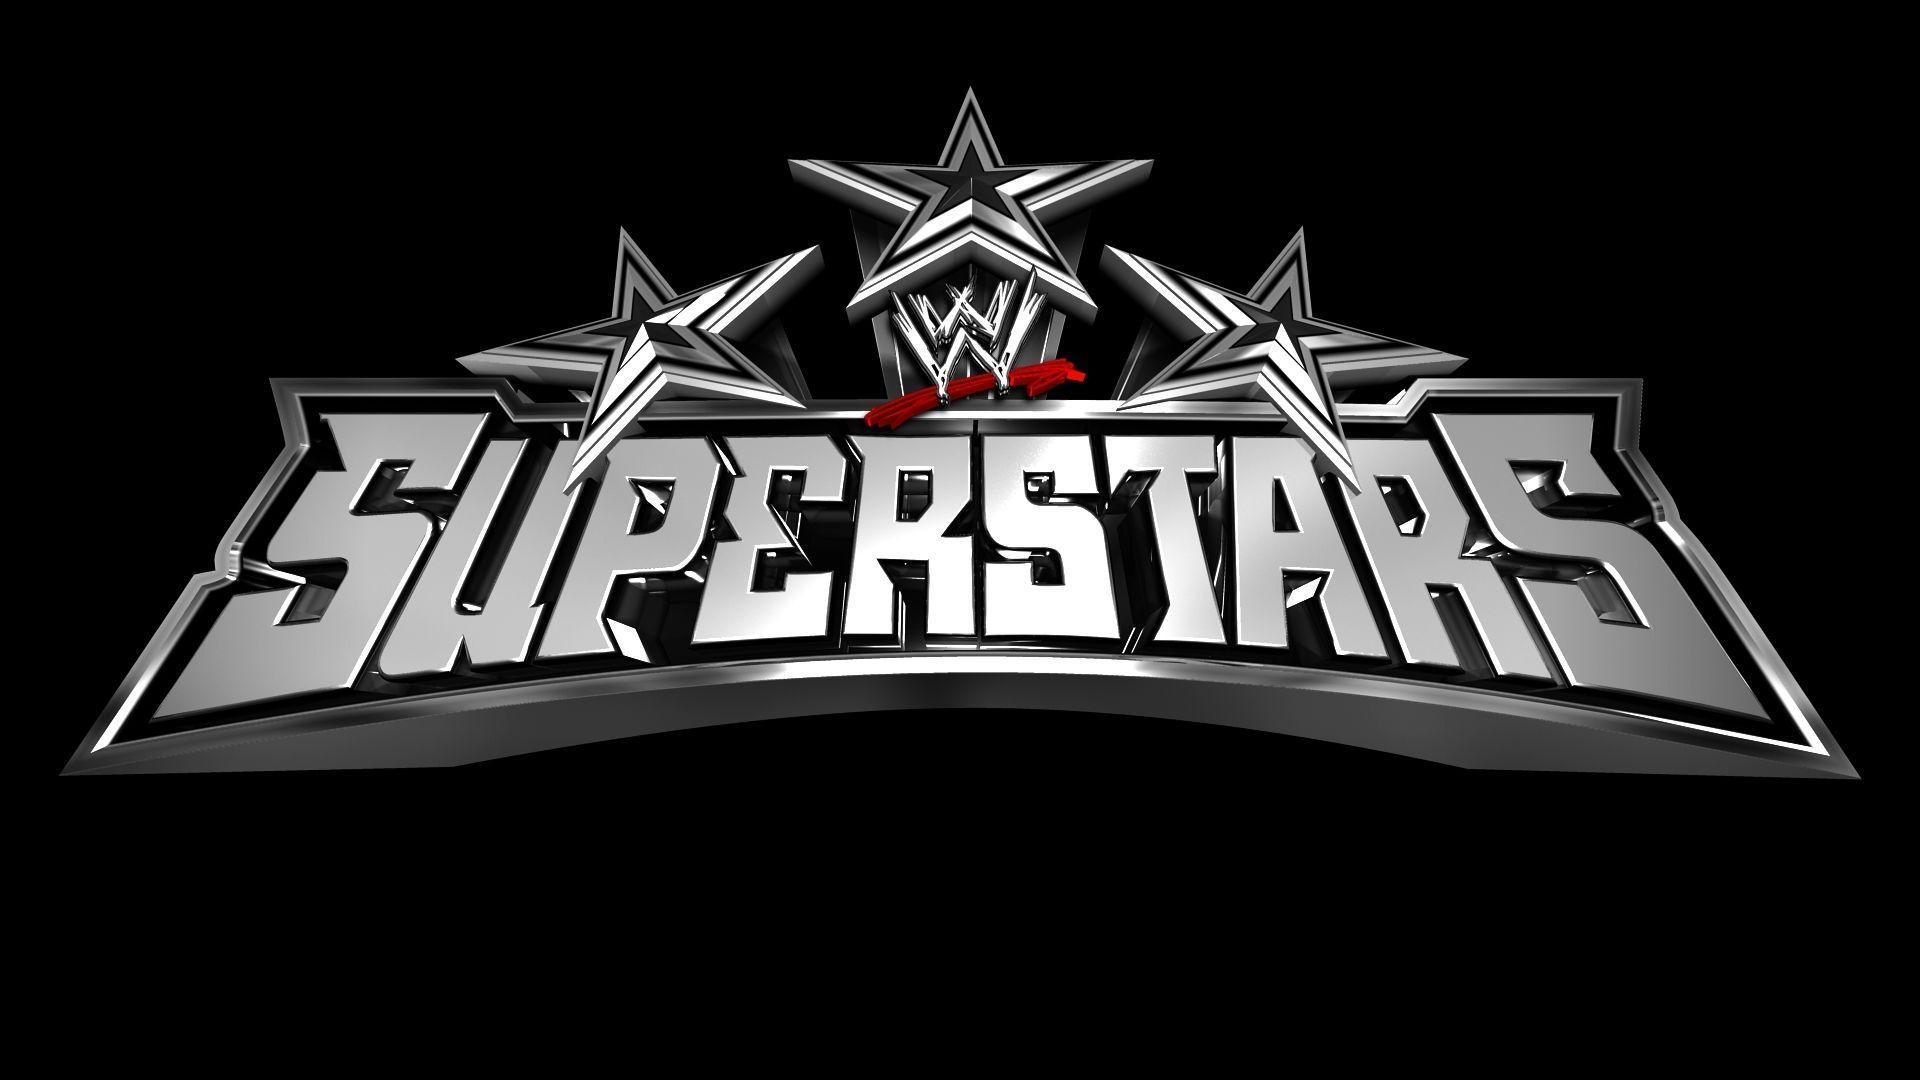 Logo WWE Superstars wallpaper HD 2016 in WWE